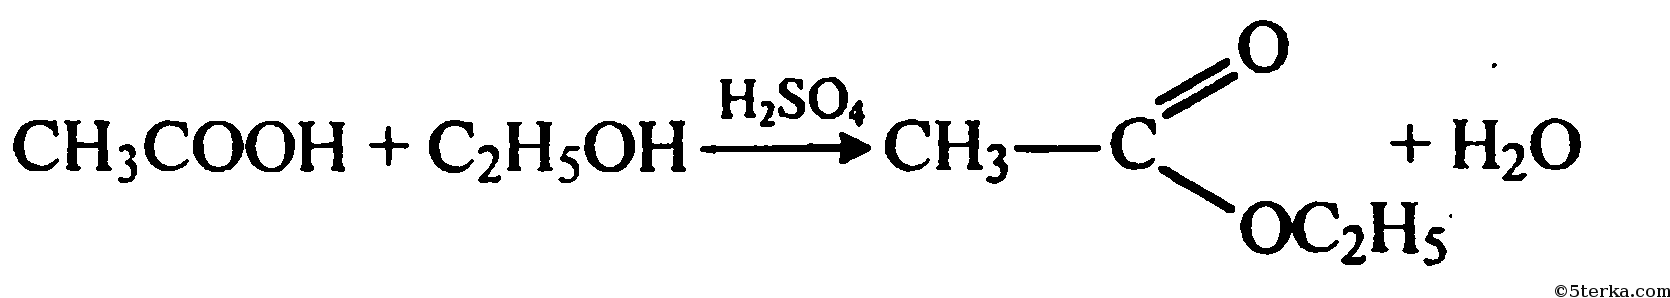 Этаналь и гидроксид меди 2. Окисление метанола на Медном катализаторе. Уксусный альдегид и гидроксид меди 2. Уксусный альдегид плюс гидроксид меди 2.